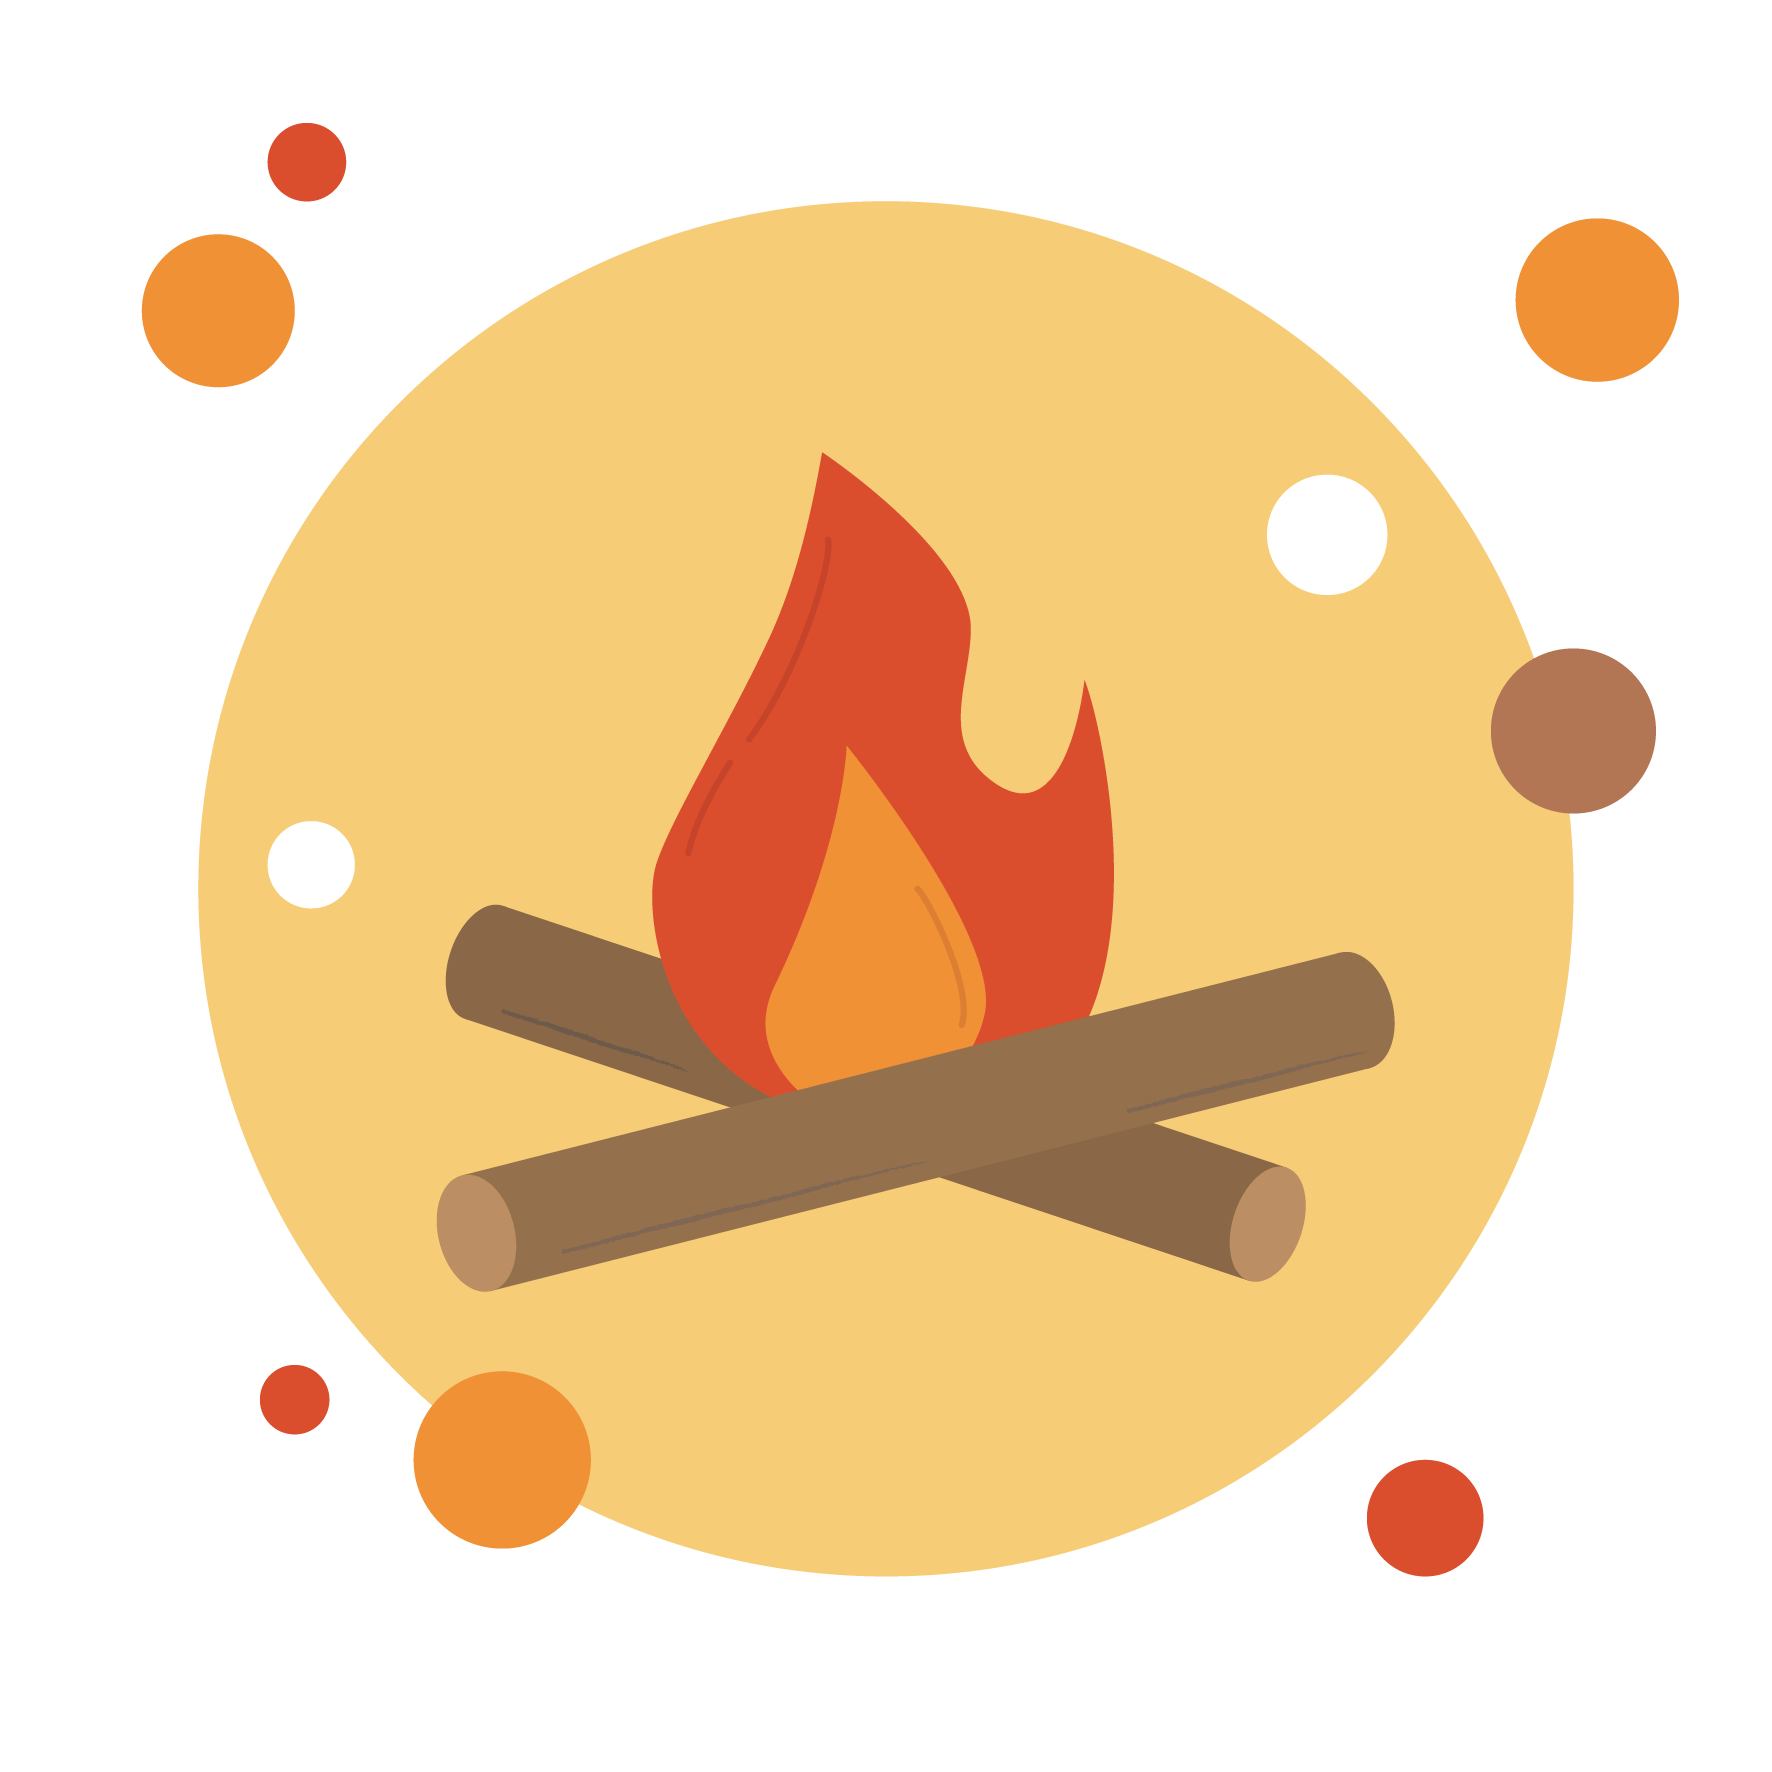 炎越しの地球を撮影したい 国境線のない宇宙に炎を掲げる 人類史上初のプロジェクト Campfire キャンプファイヤー